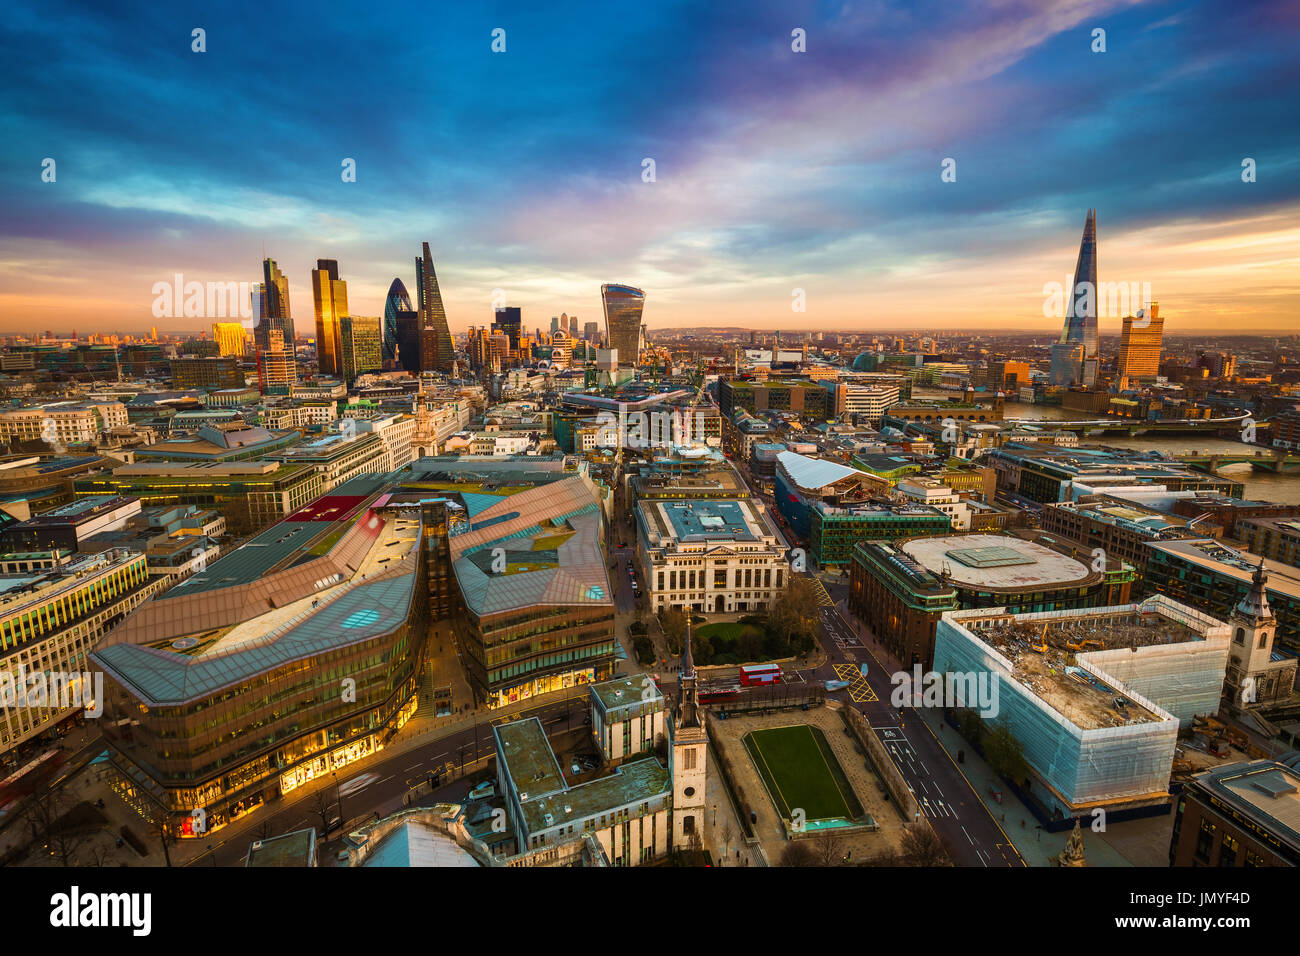 Londra, Inghilterra - panoramica vista kyline della famosa banca finanziario distretto di Londra presso ora d'oro. Questa visualizzazione include famosi grattacieli, office Foto Stock